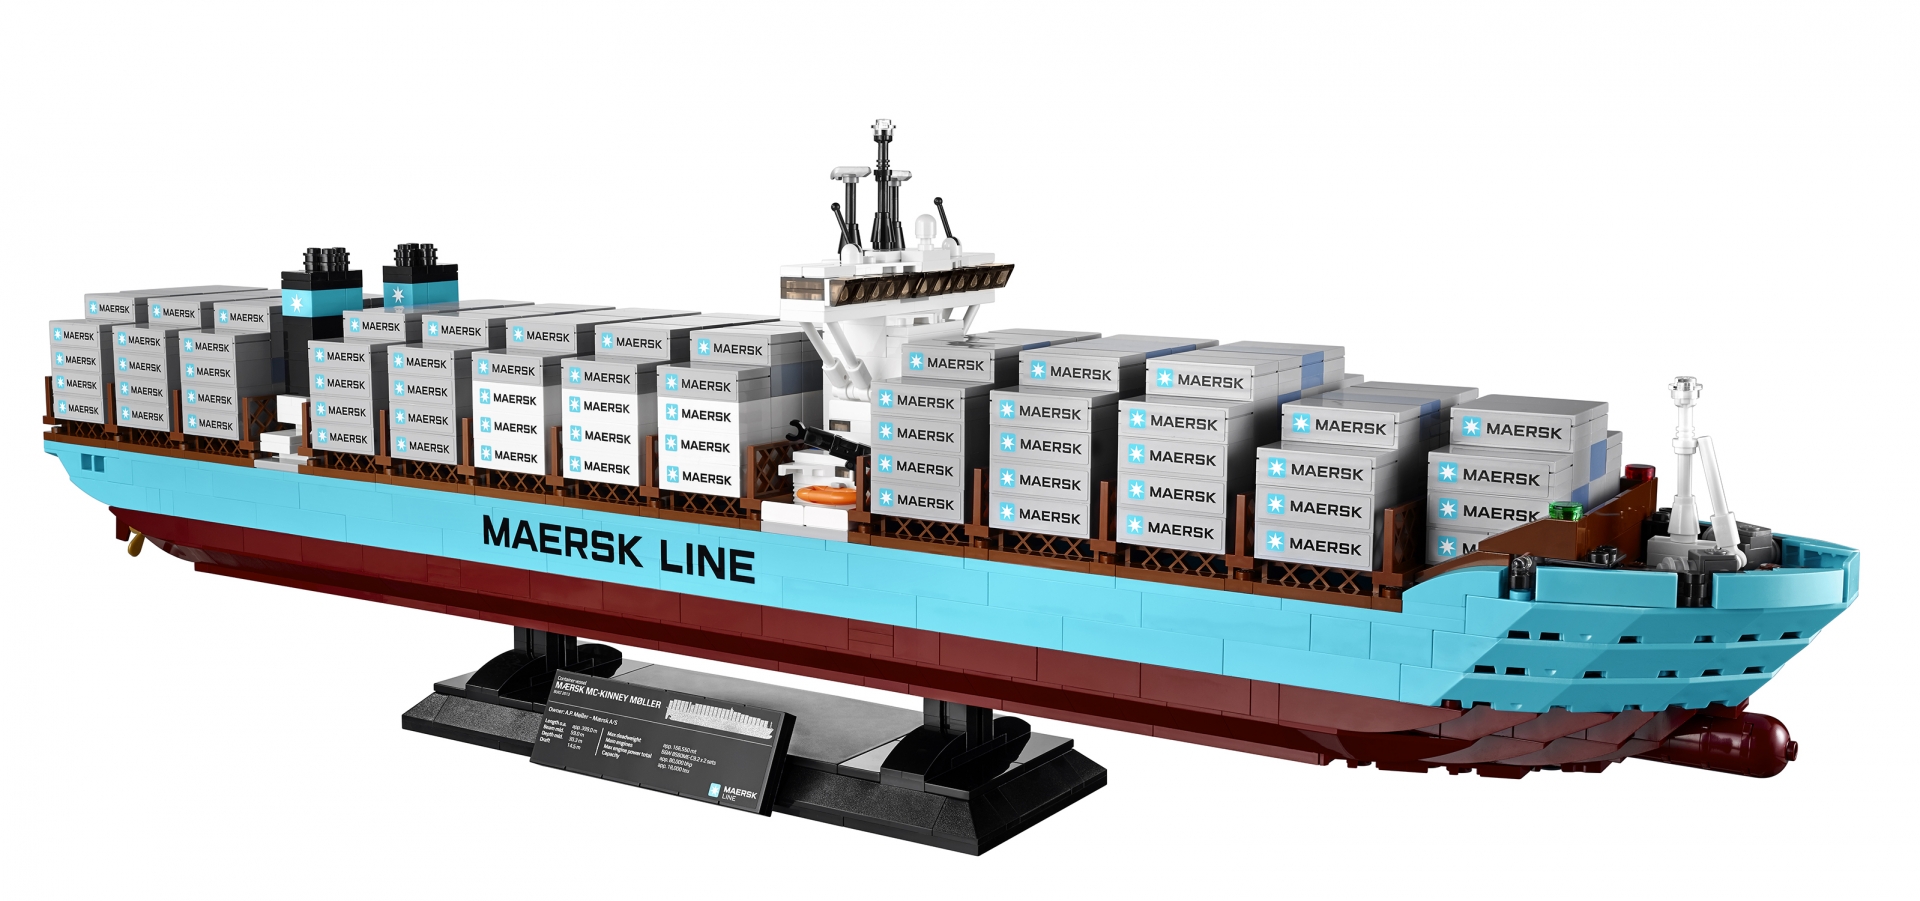 10241 Maersk Line Triple-E - Special LEGO Themes - Eurobricks Forums